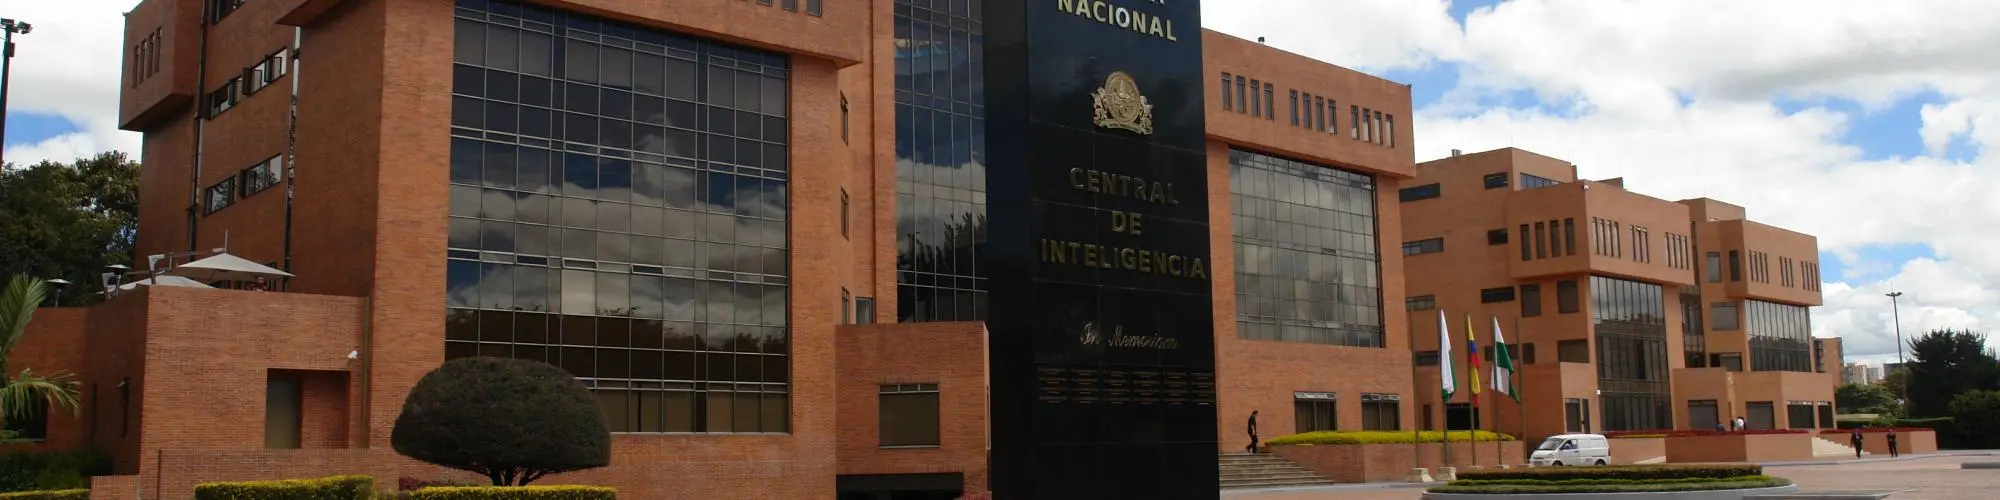 inteligencia policial colombia - Qué significa sipol en Colombia